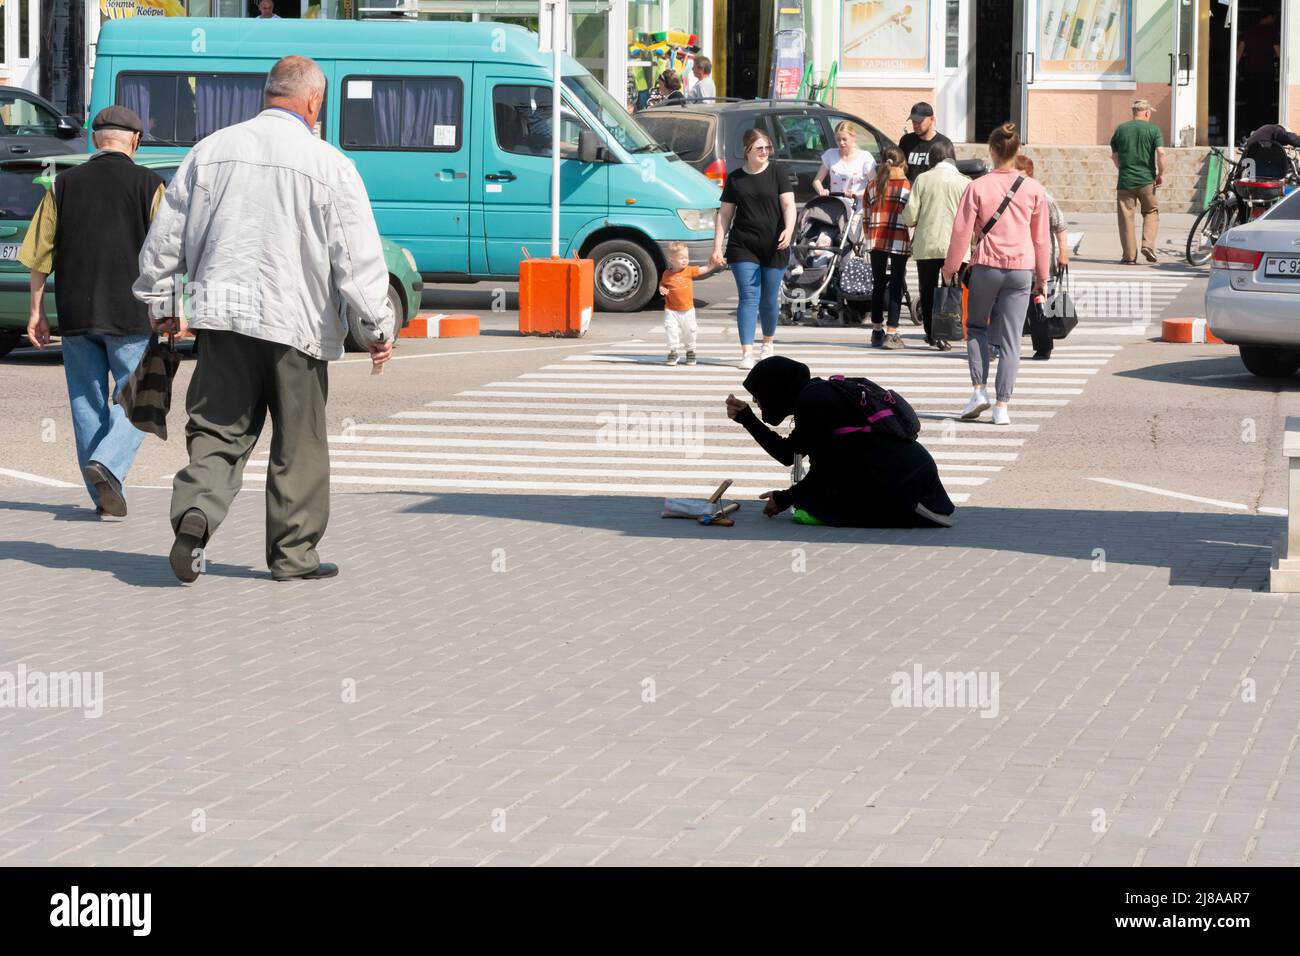 Tiraspol, Moldova - 13 mai 2022 : une mendiante mendiant près du parc, s'agenouille et prie. Les problèmes sociaux dans les pays de l'ex-URSS, l'unreco Banque D'Images